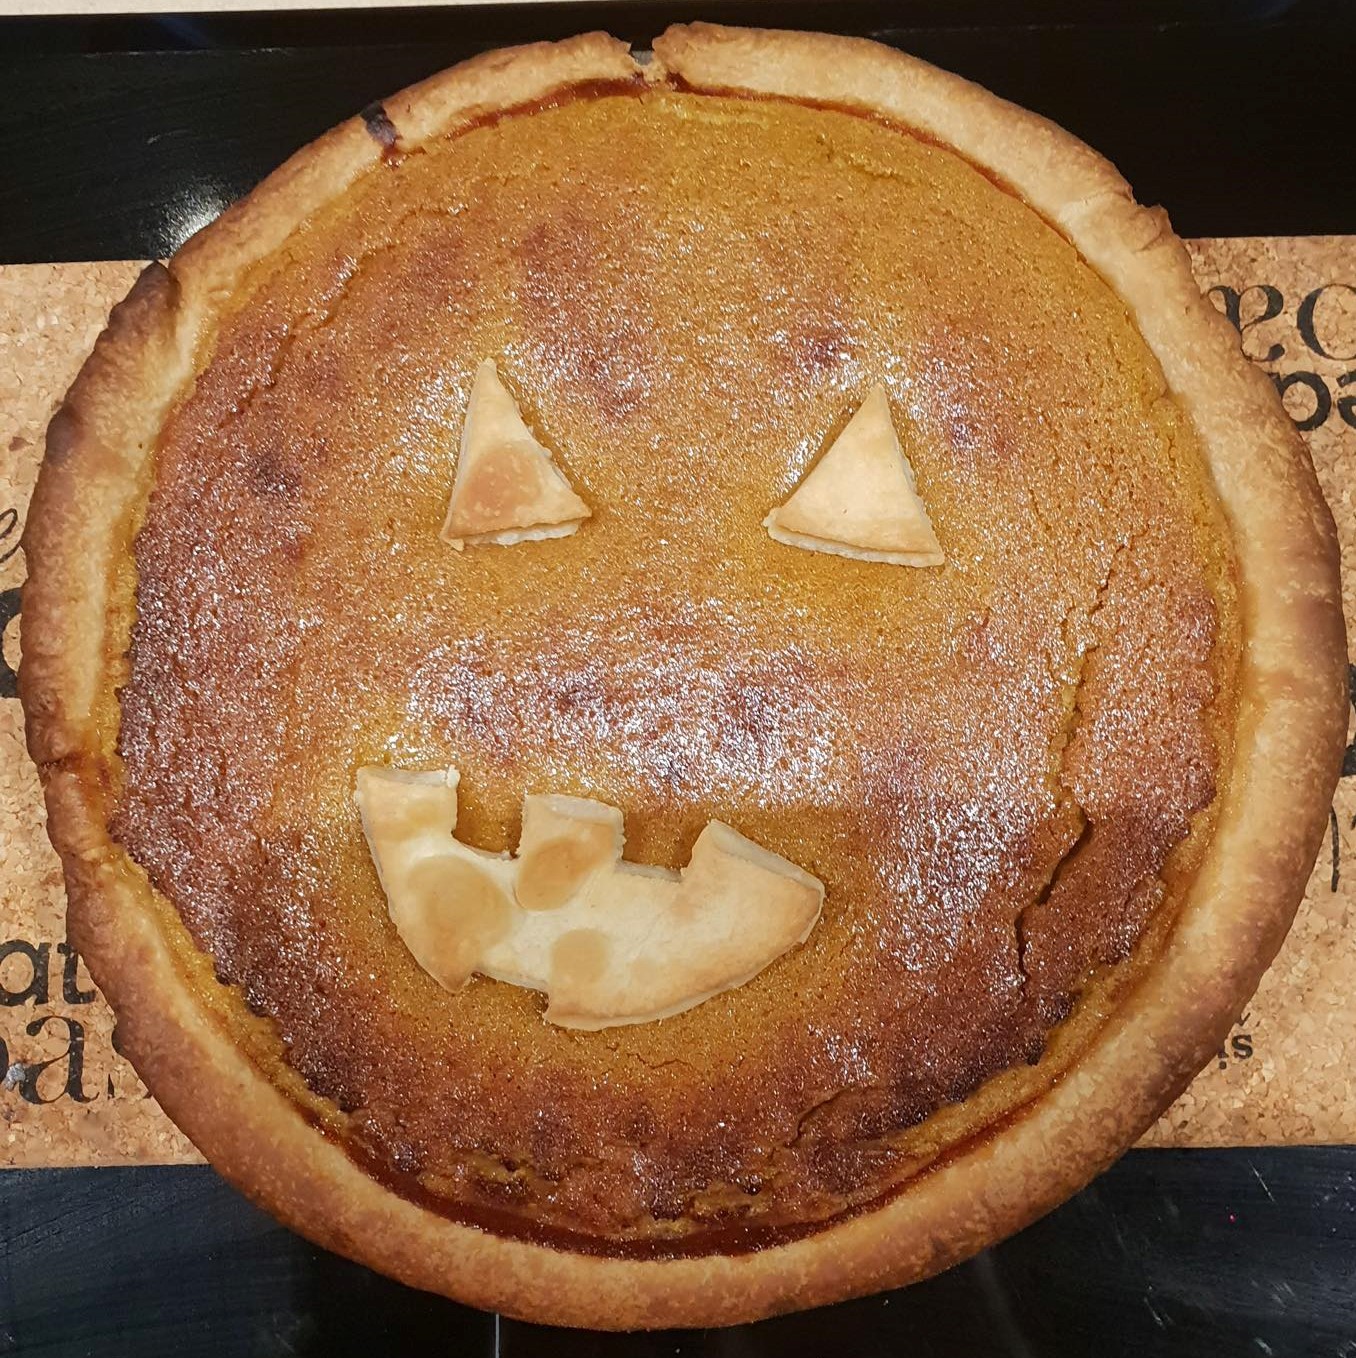 Pumpkin Pie 